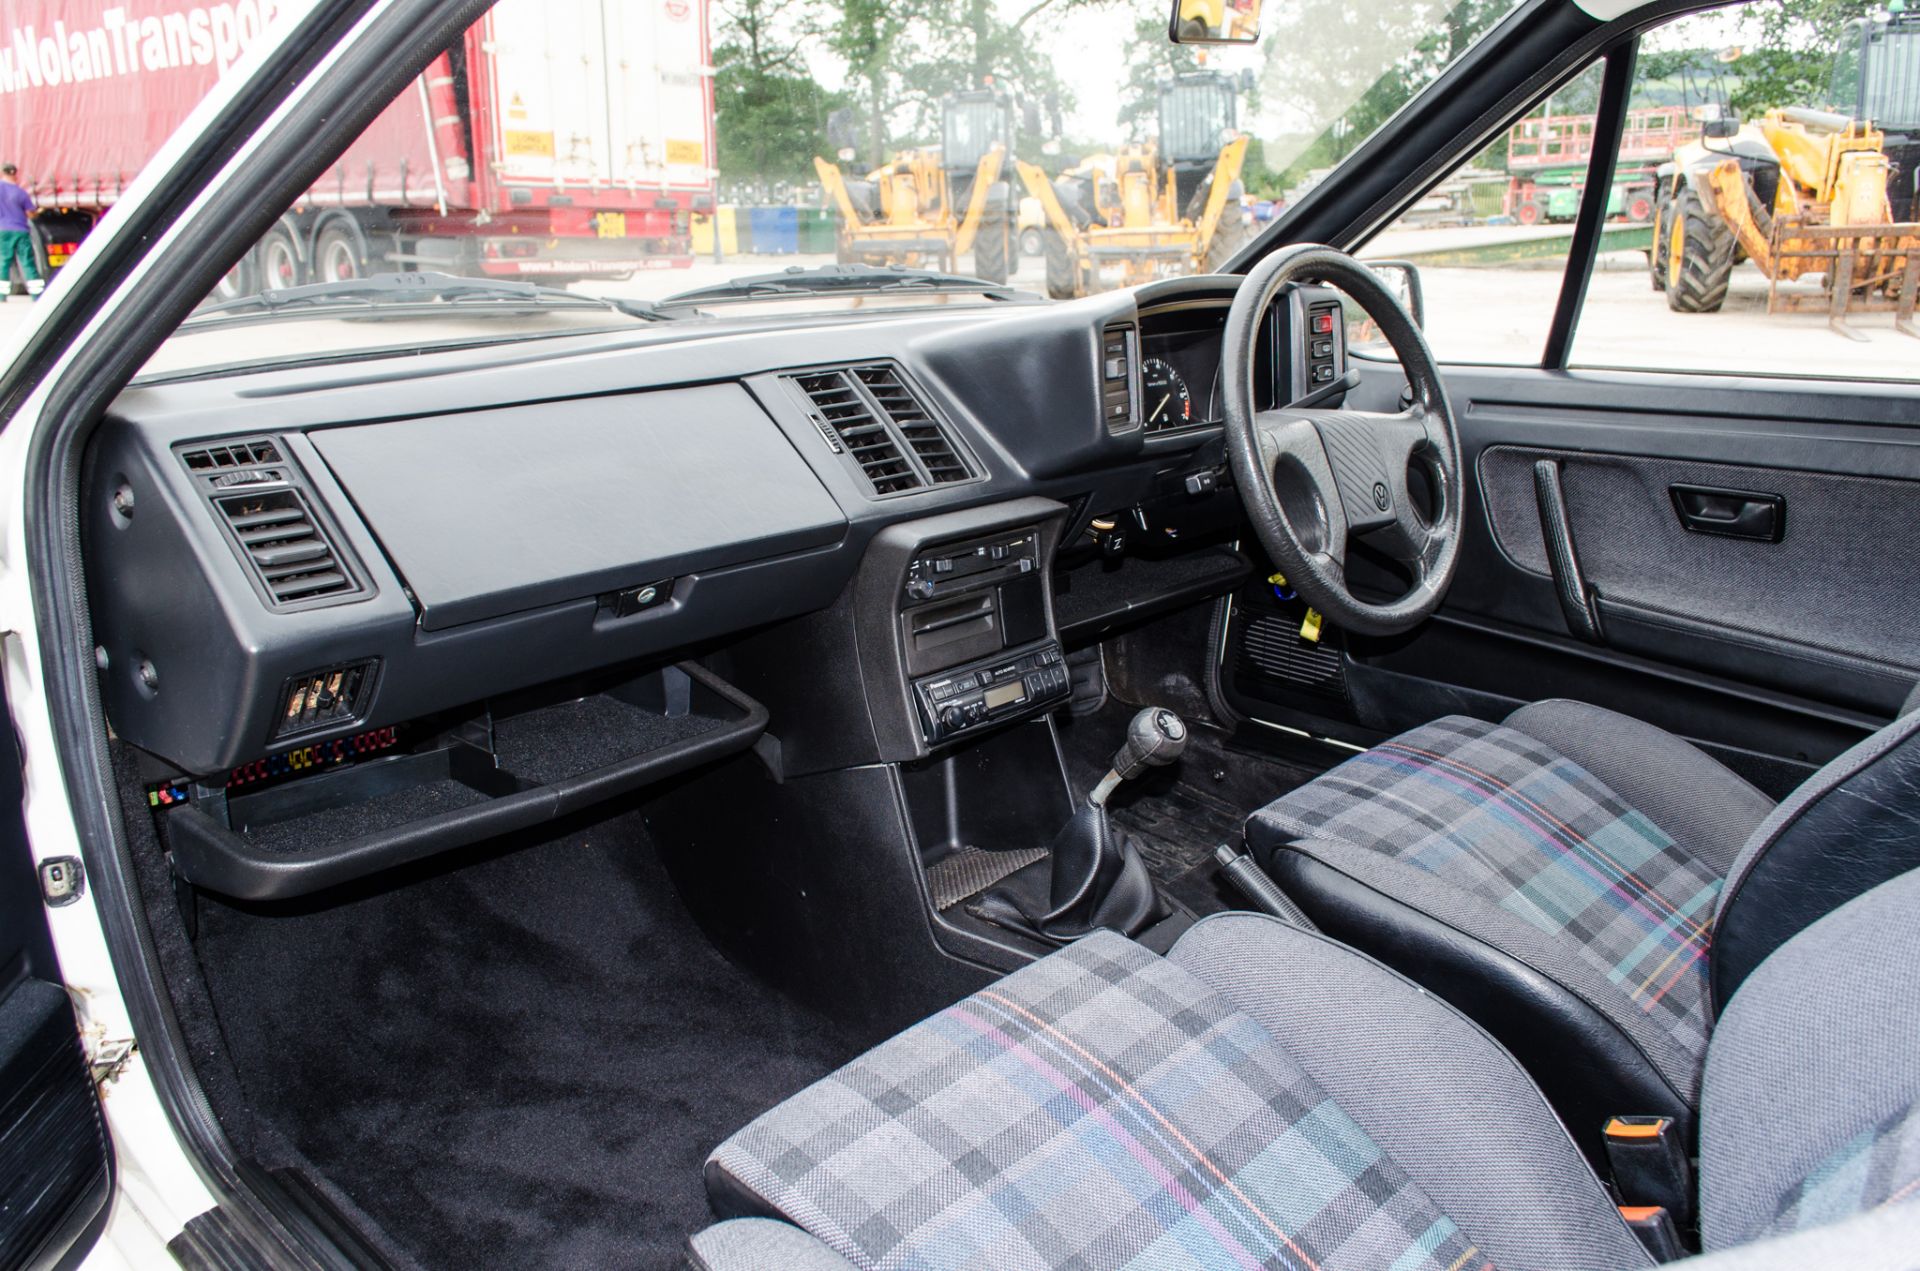 1991 Volkswagen Scirocco GTII 1800cc 3 door coupe - Image 30 of 46